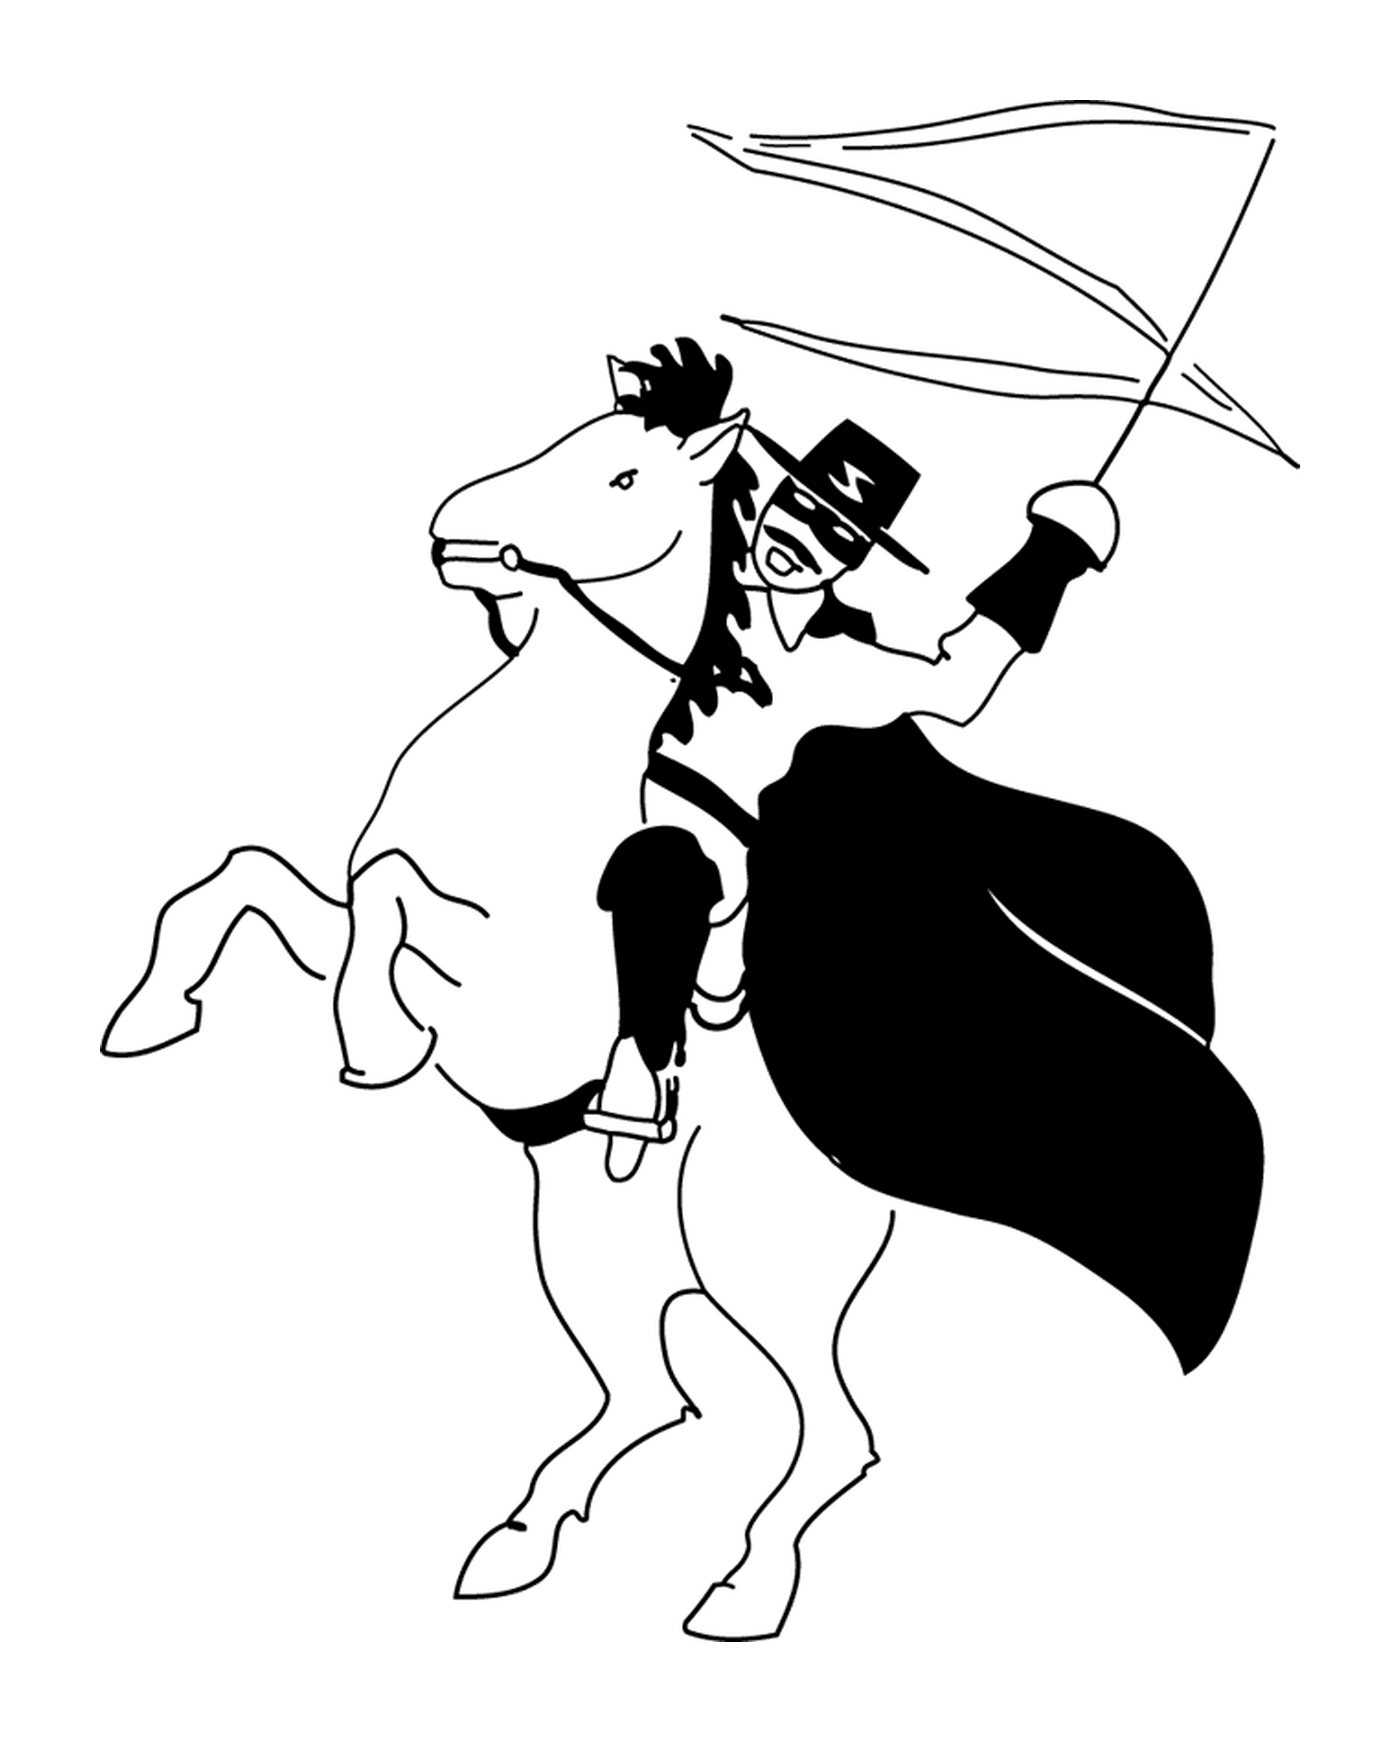  Zorro em seu cavalo Tornado 